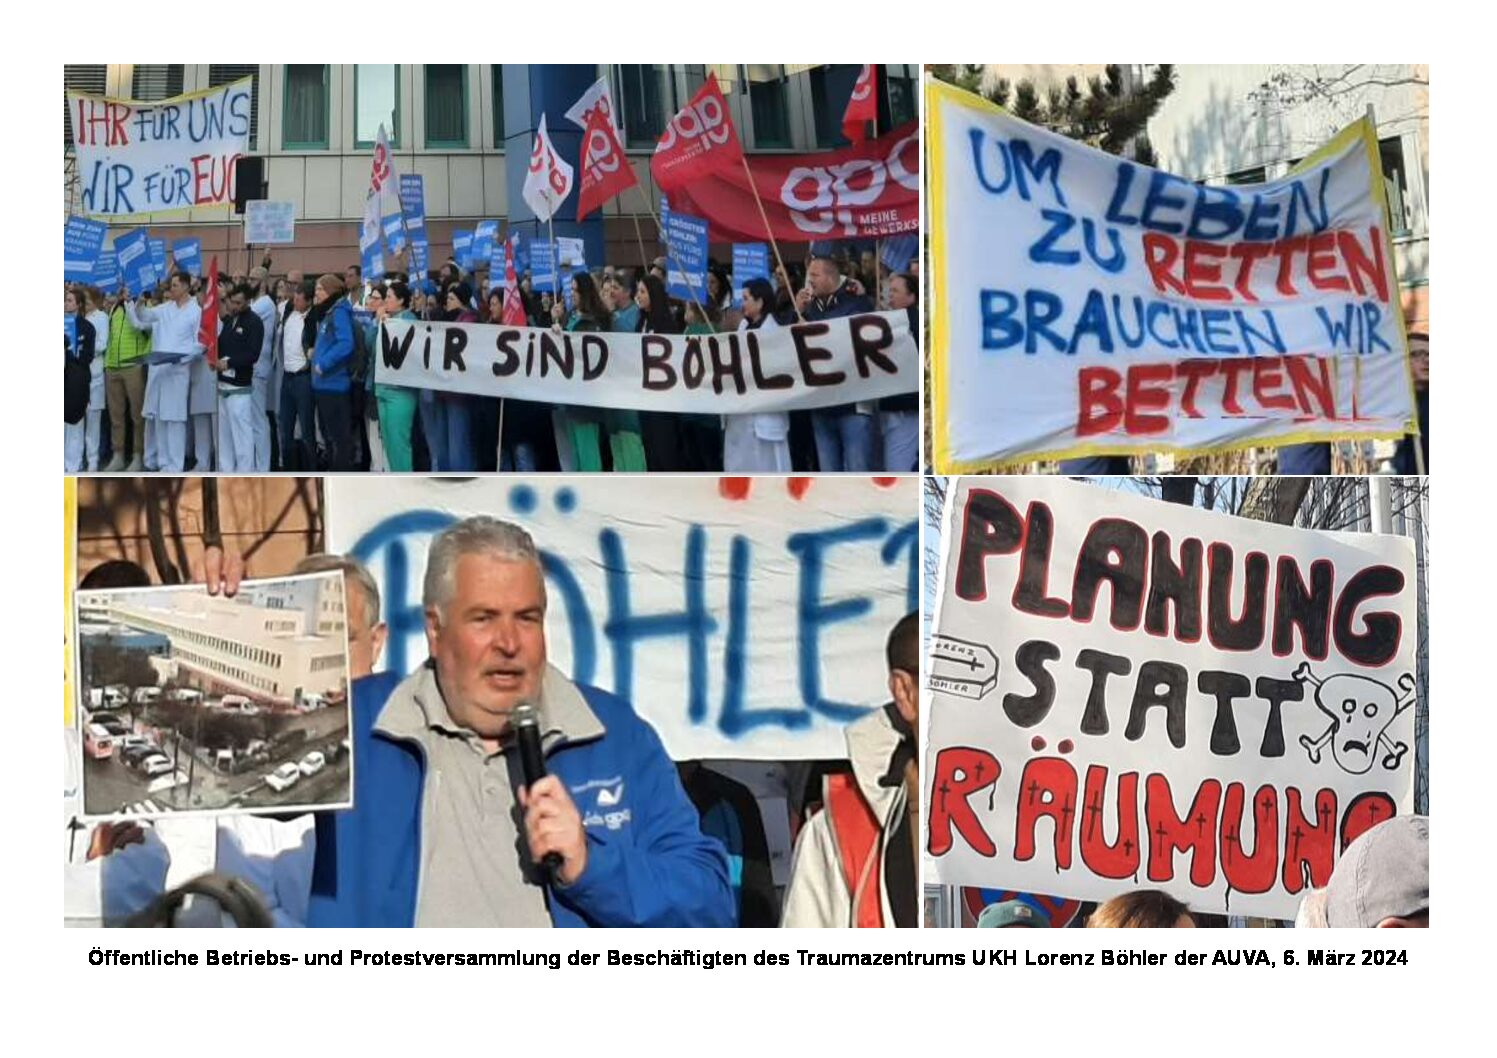 NEIN zur Schließung des AUVA-UKH Lorenz Böhler! Solidarität mit den Beschäftigten! JA zur Erhaltung und zum Ausbau der öffentlichen  Gesundheitsversorgung für die Bevölkerung!